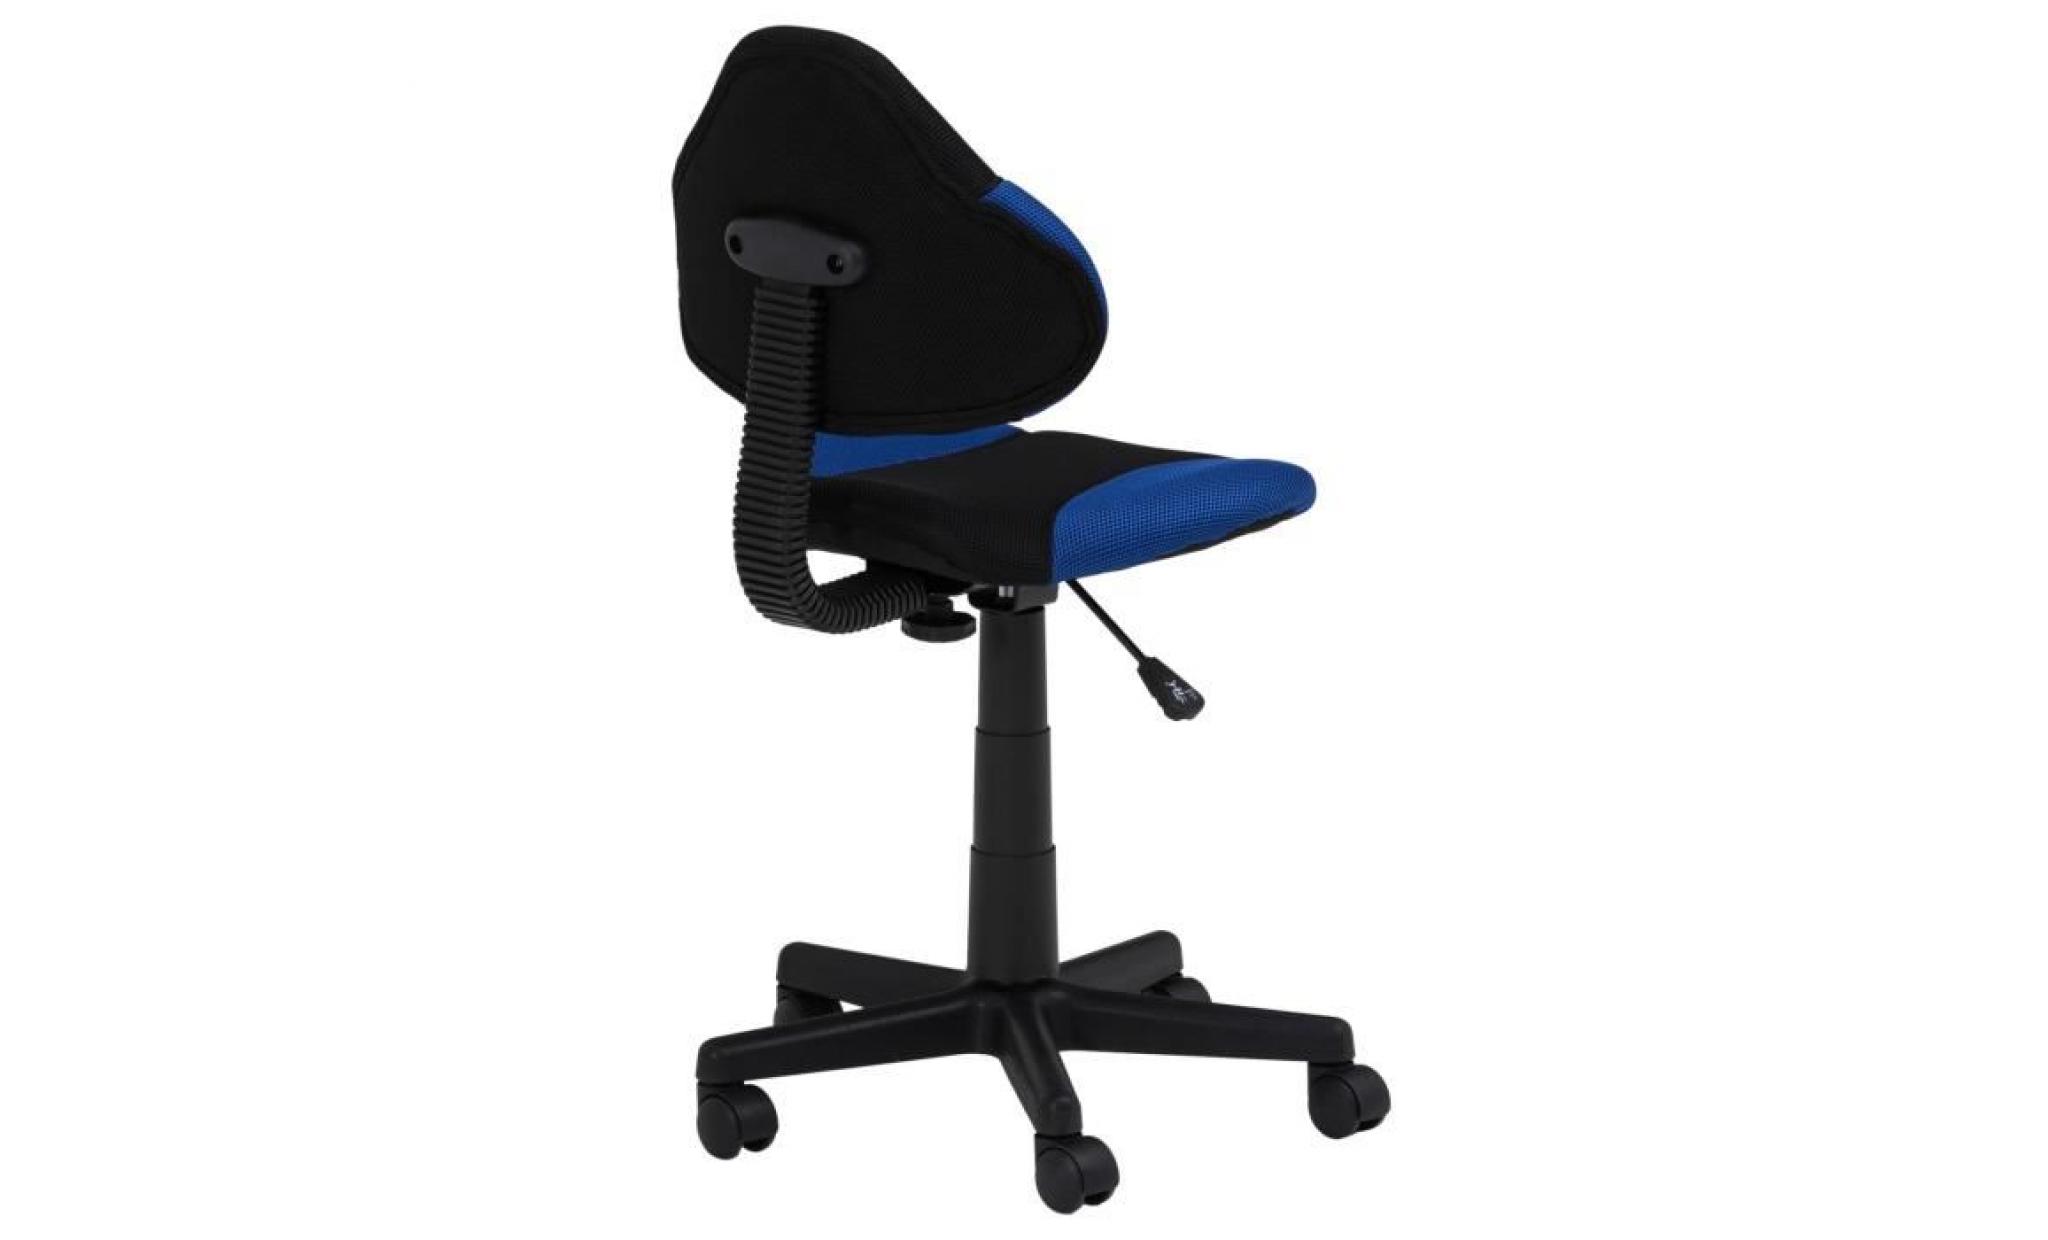 chaise de bureau pour enfant alondra fauteuil pivotant avec hauteur réglable, revêtement en mesh noir/bleu pas cher